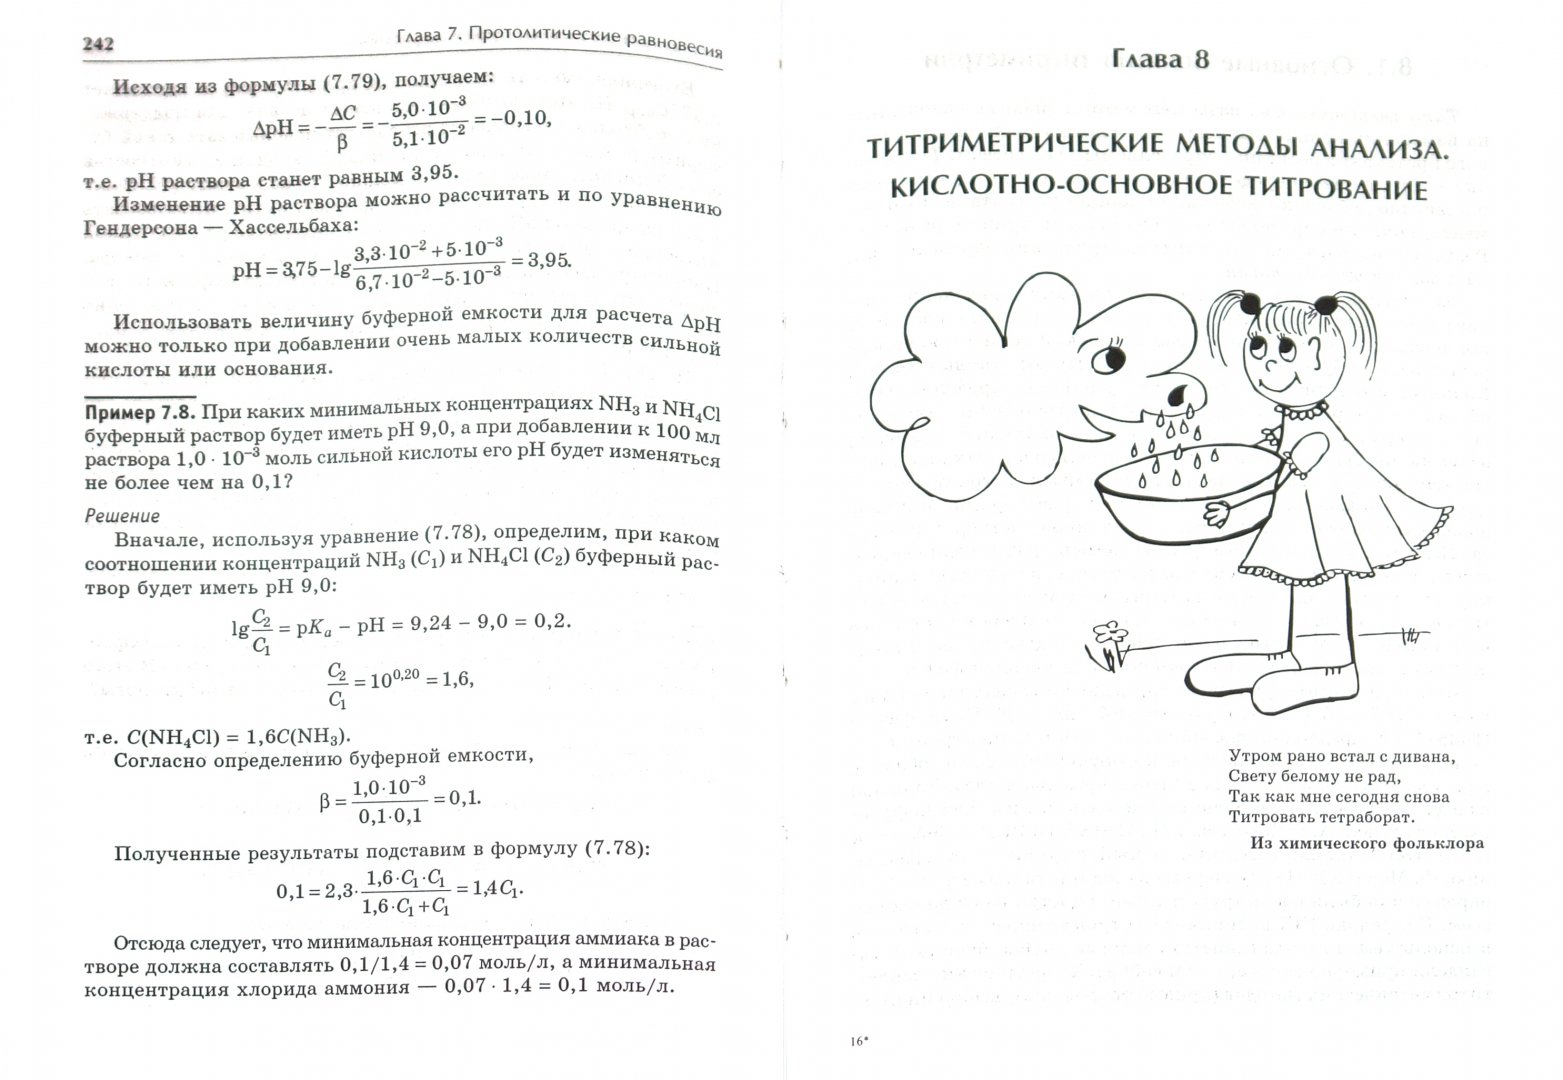 Иллюстрация 1 из 9 для Аналитическая химия. Химические методы анализа - Жебентяев, Жерносек, Талуть | Лабиринт - книги. Источник: Лабиринт